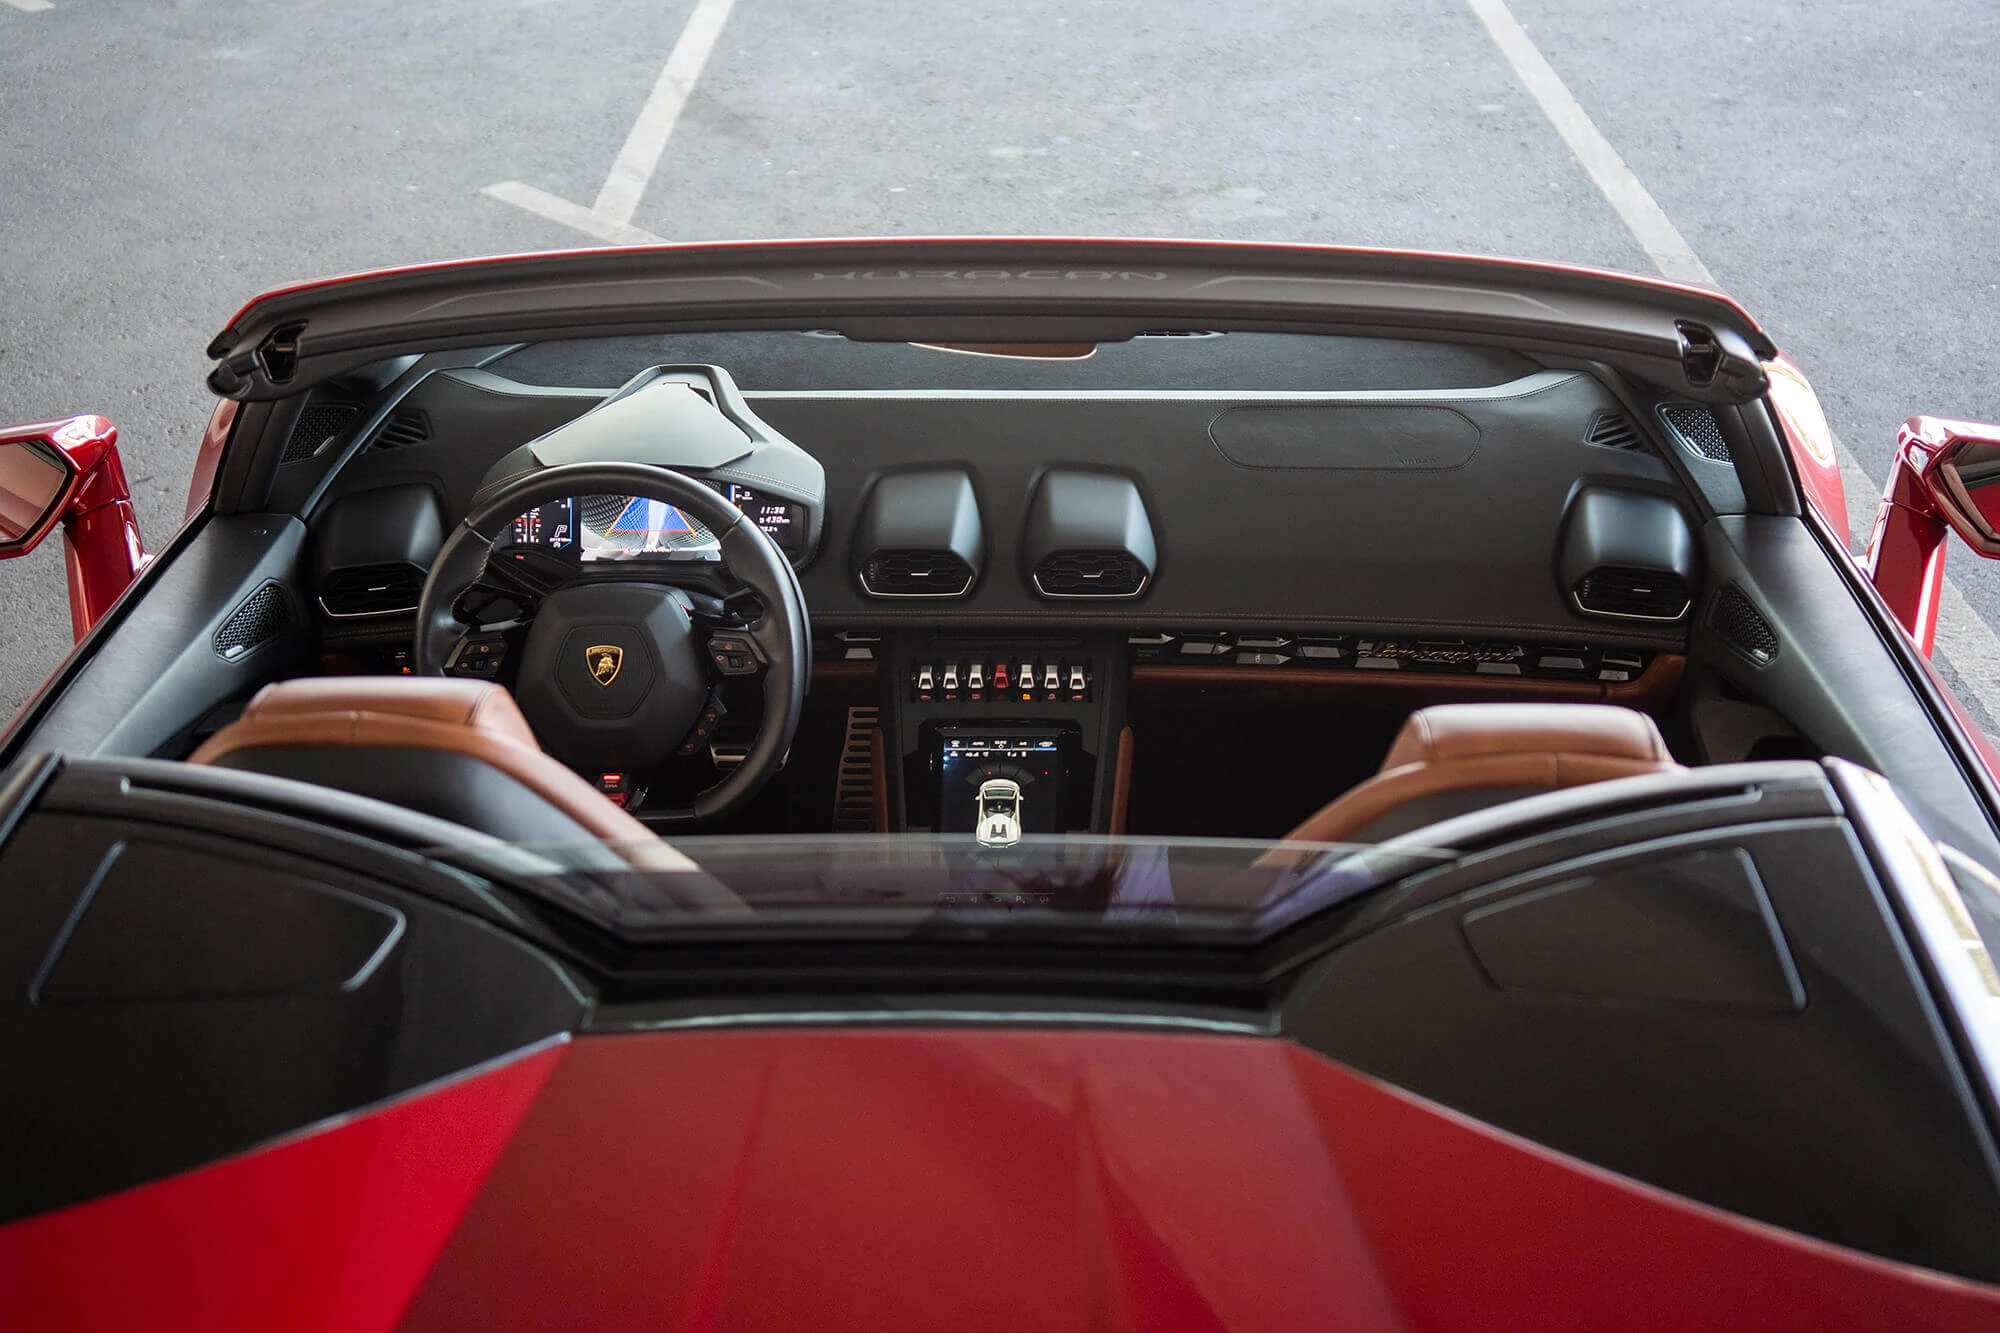 Lamborghini Huracan EVO Spyder Kırmızı